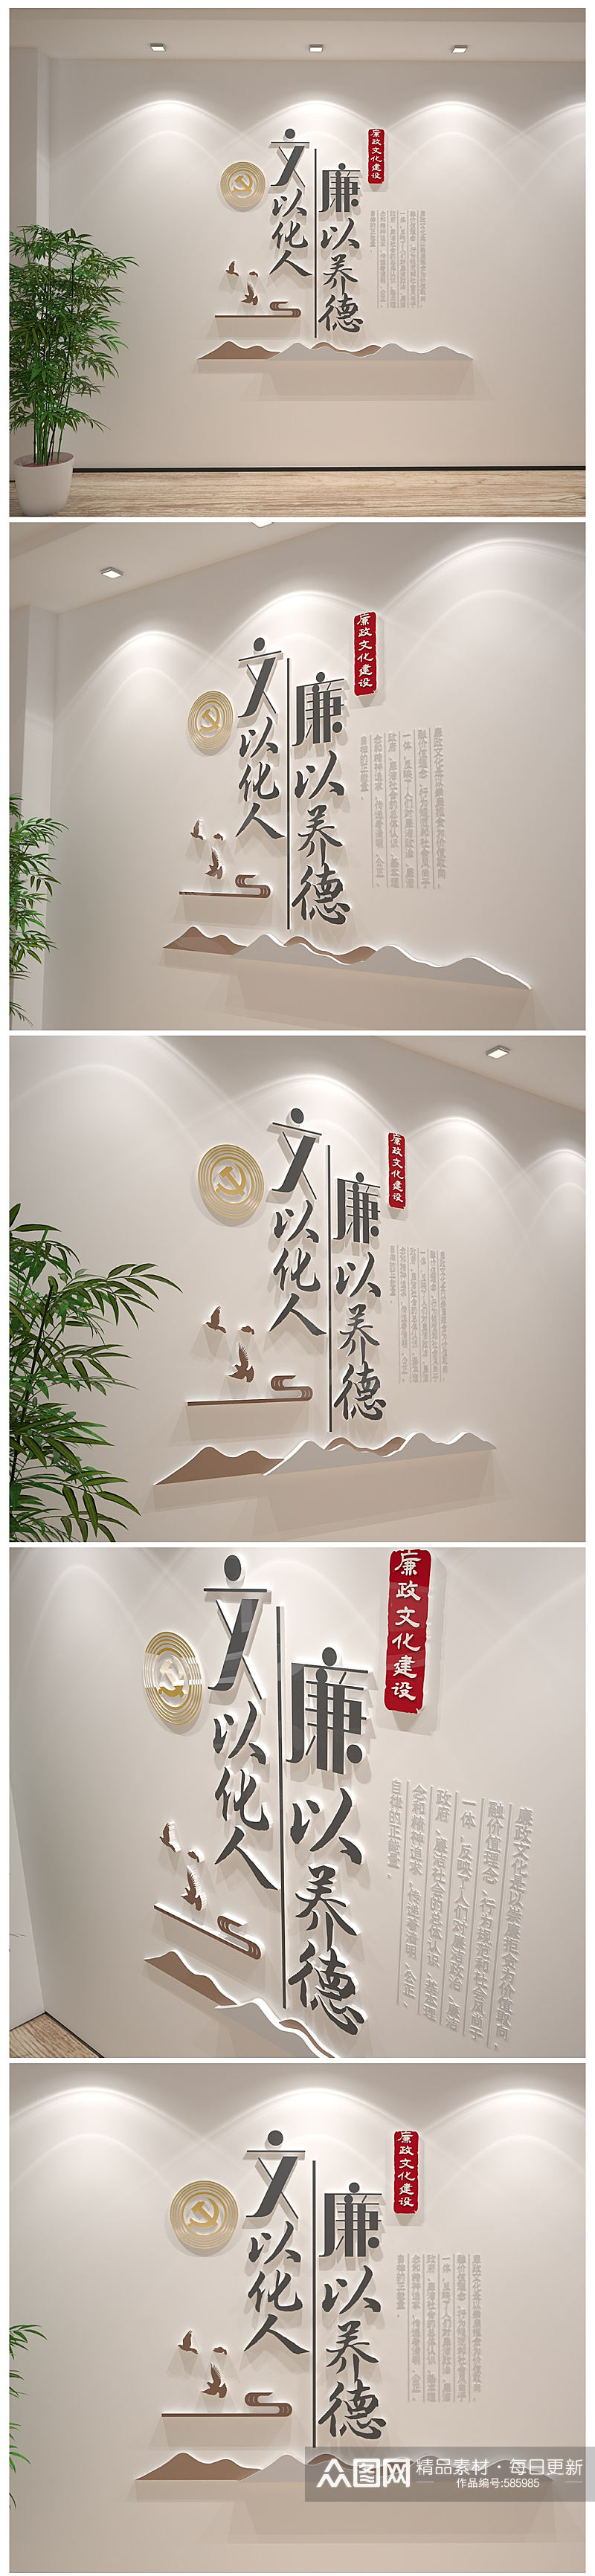 中国风廉以养德党建廉政 党建标语文化墙素材